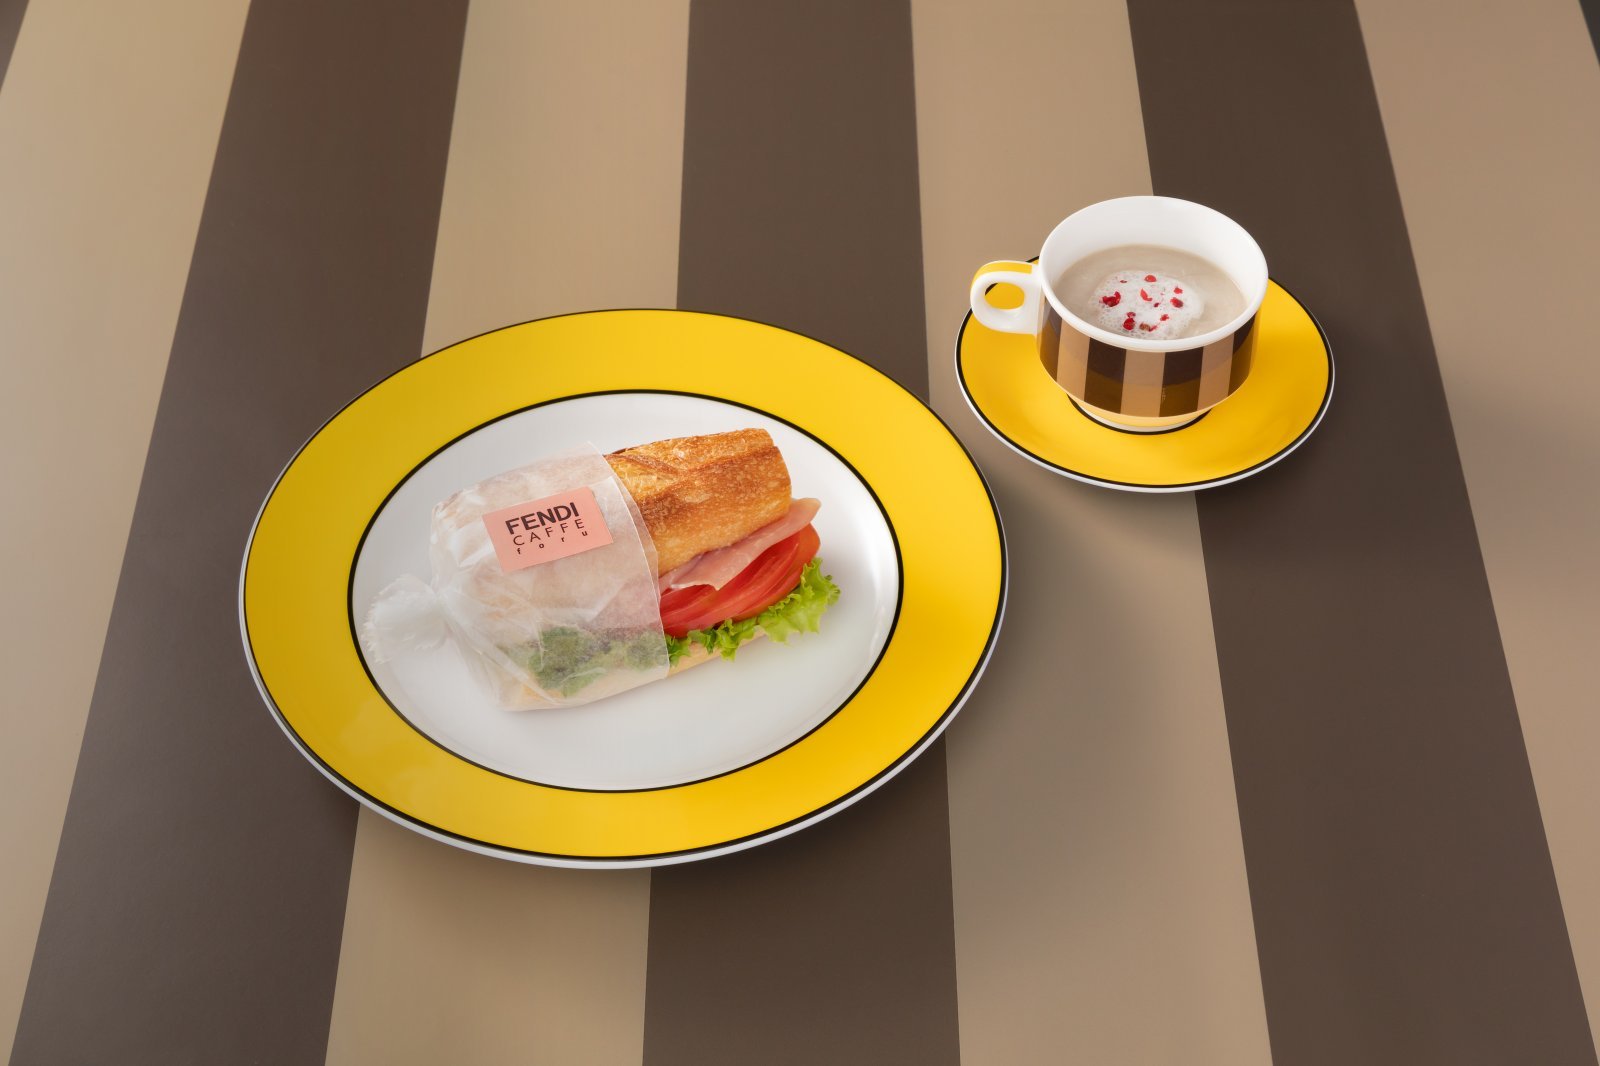 05_FENDI CAFFE_Baguette Sandwich.jpg